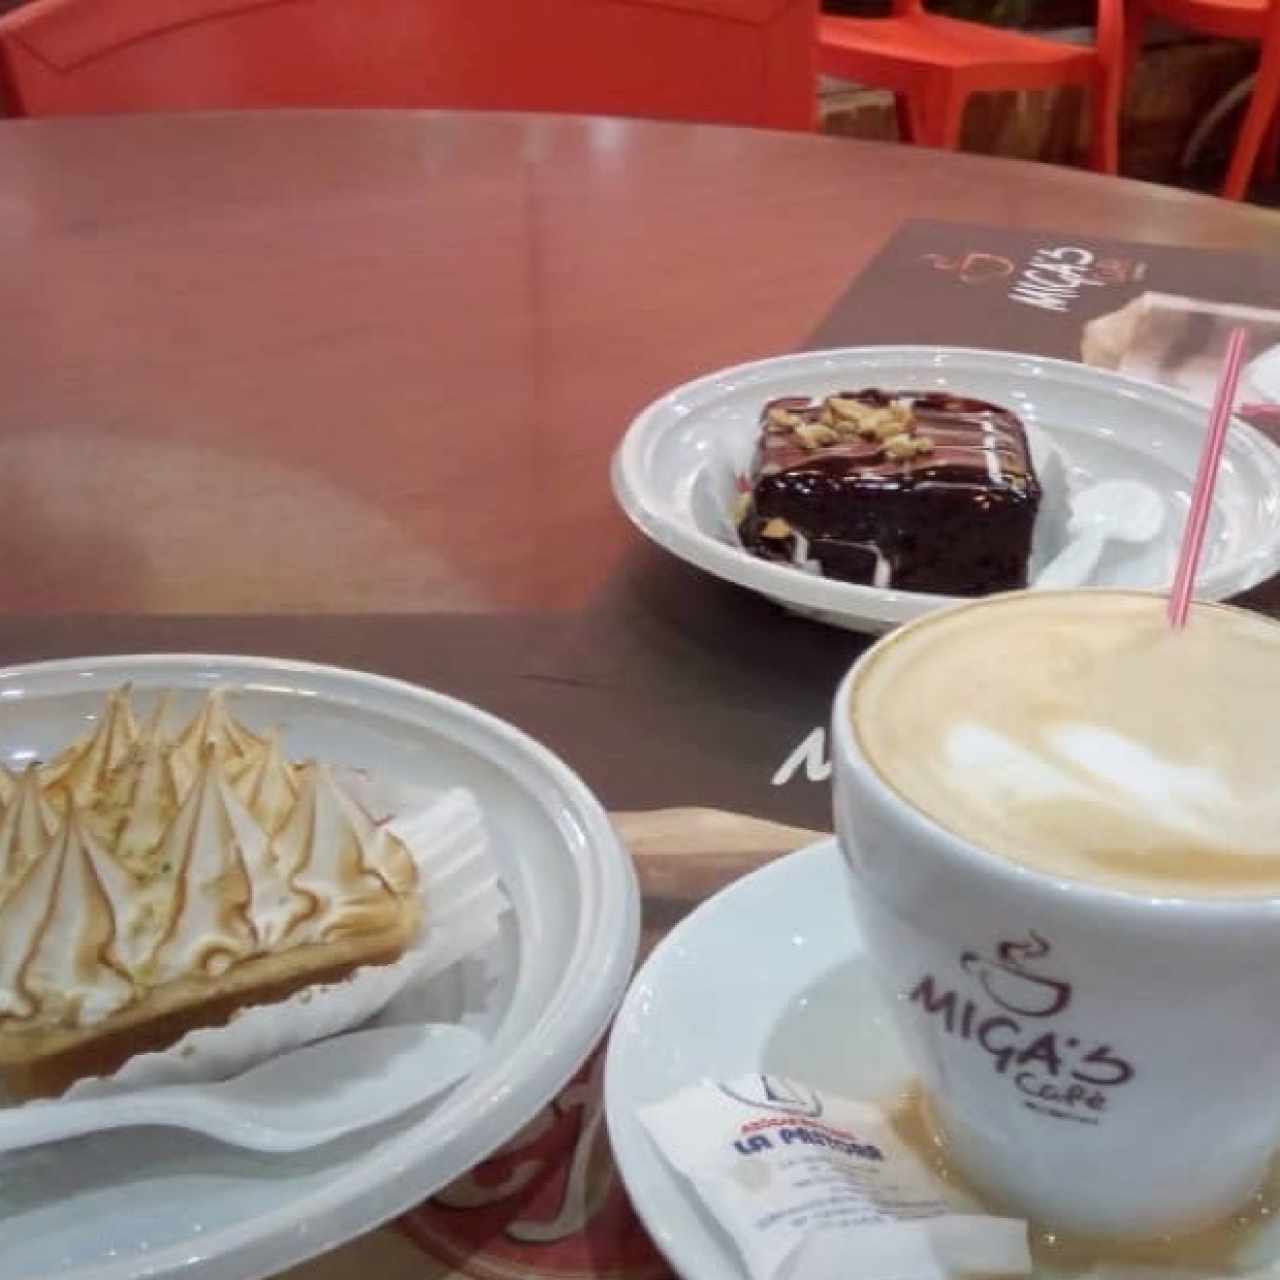 Cafe Latte, Tartaleta de Limon y Brownie